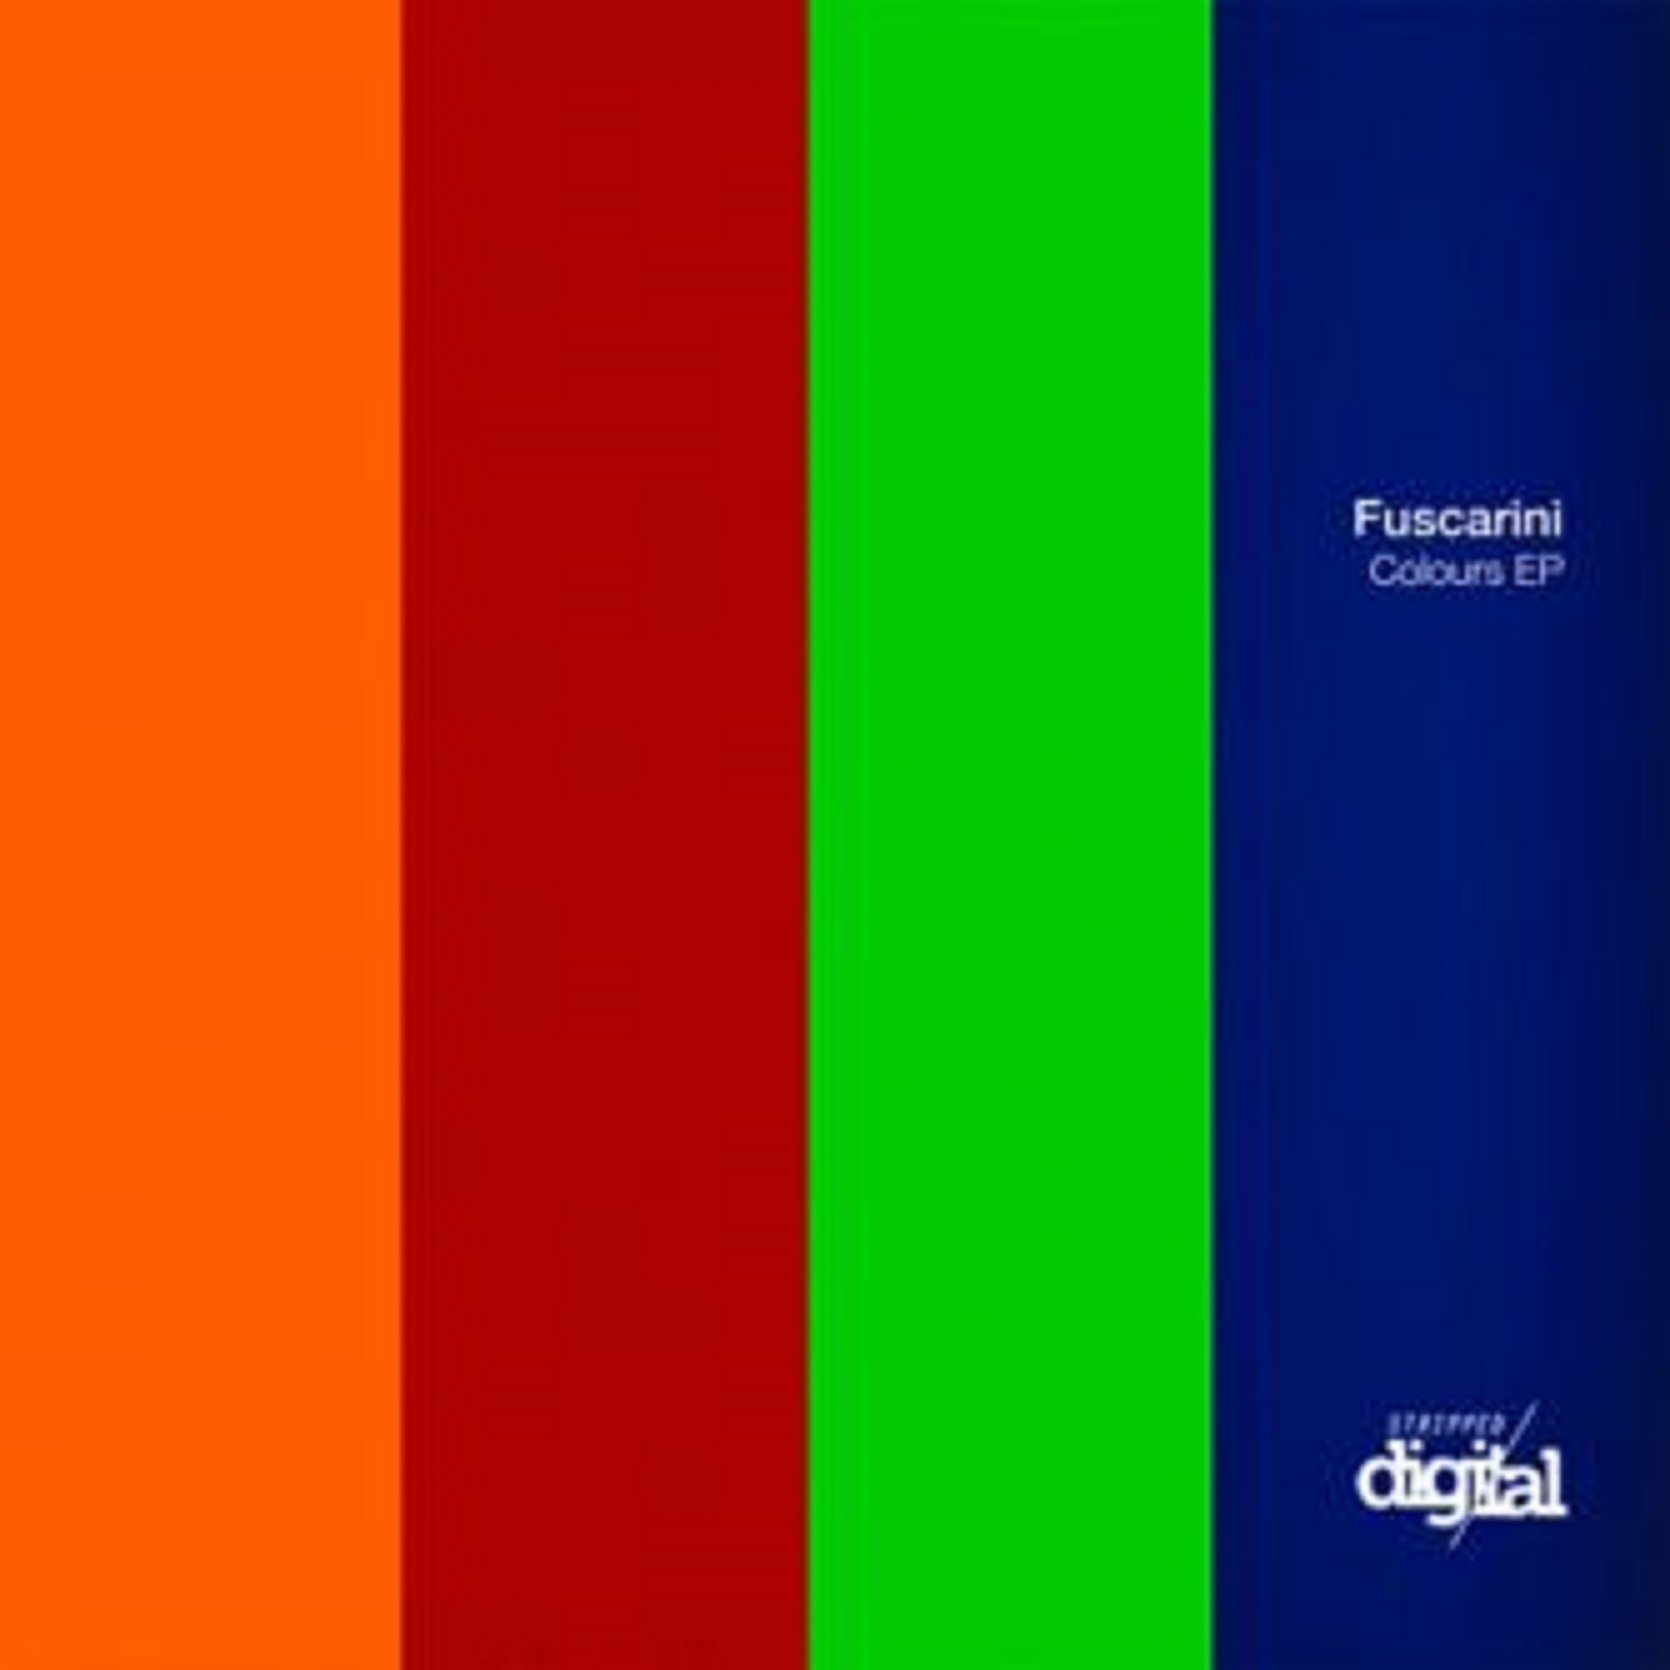 Fuscarini - Colours EP